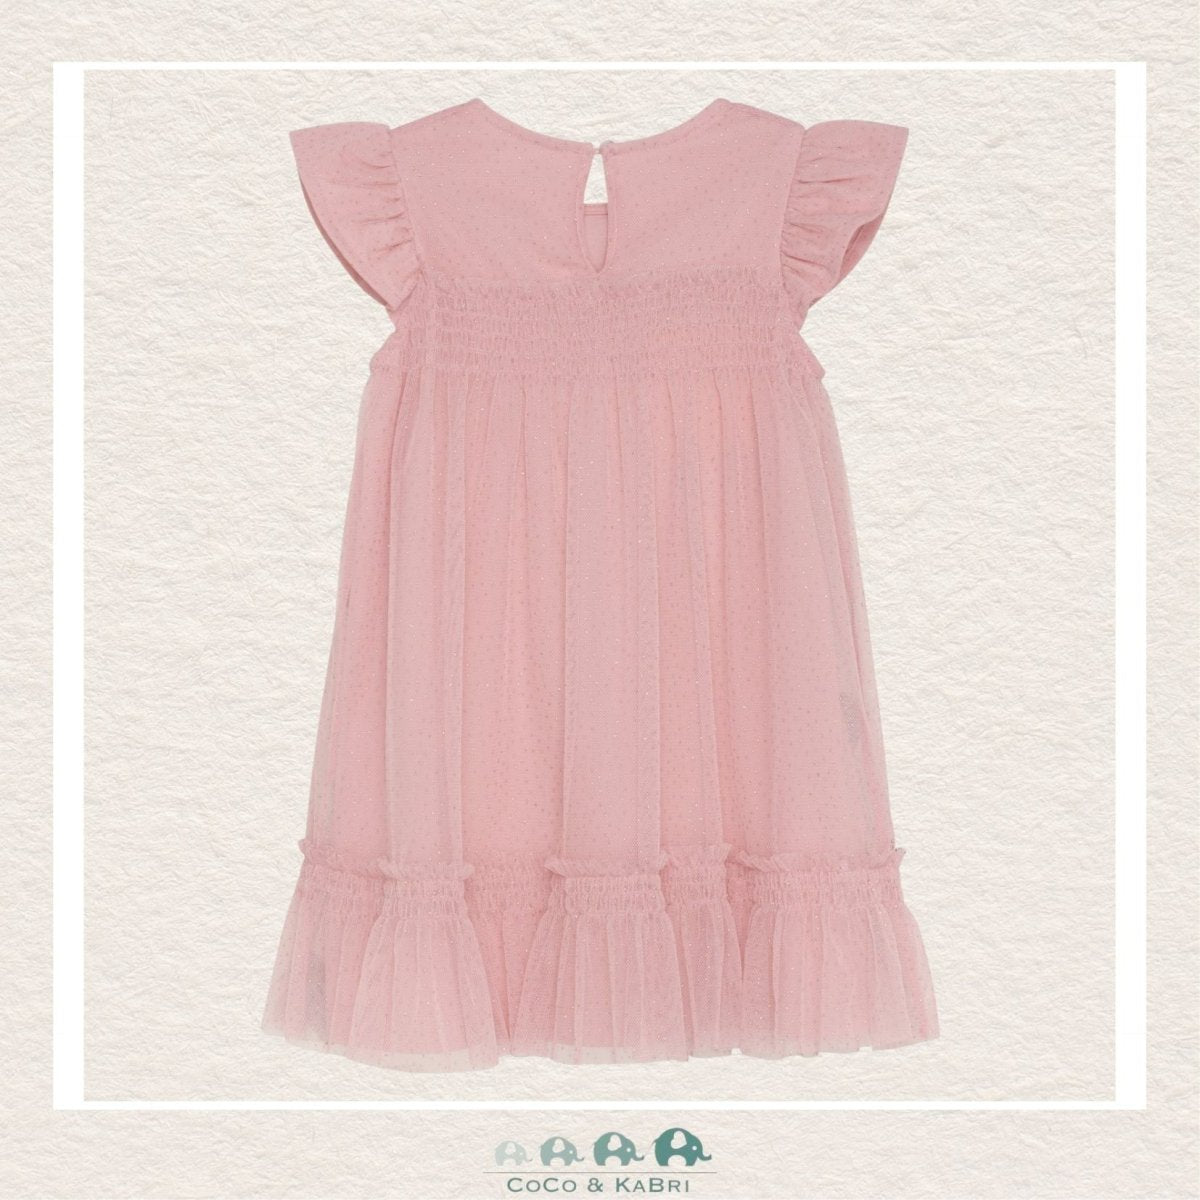 Creamie : Girls Pink Mesh Dress, CoCo & KaBri Children's Boutique